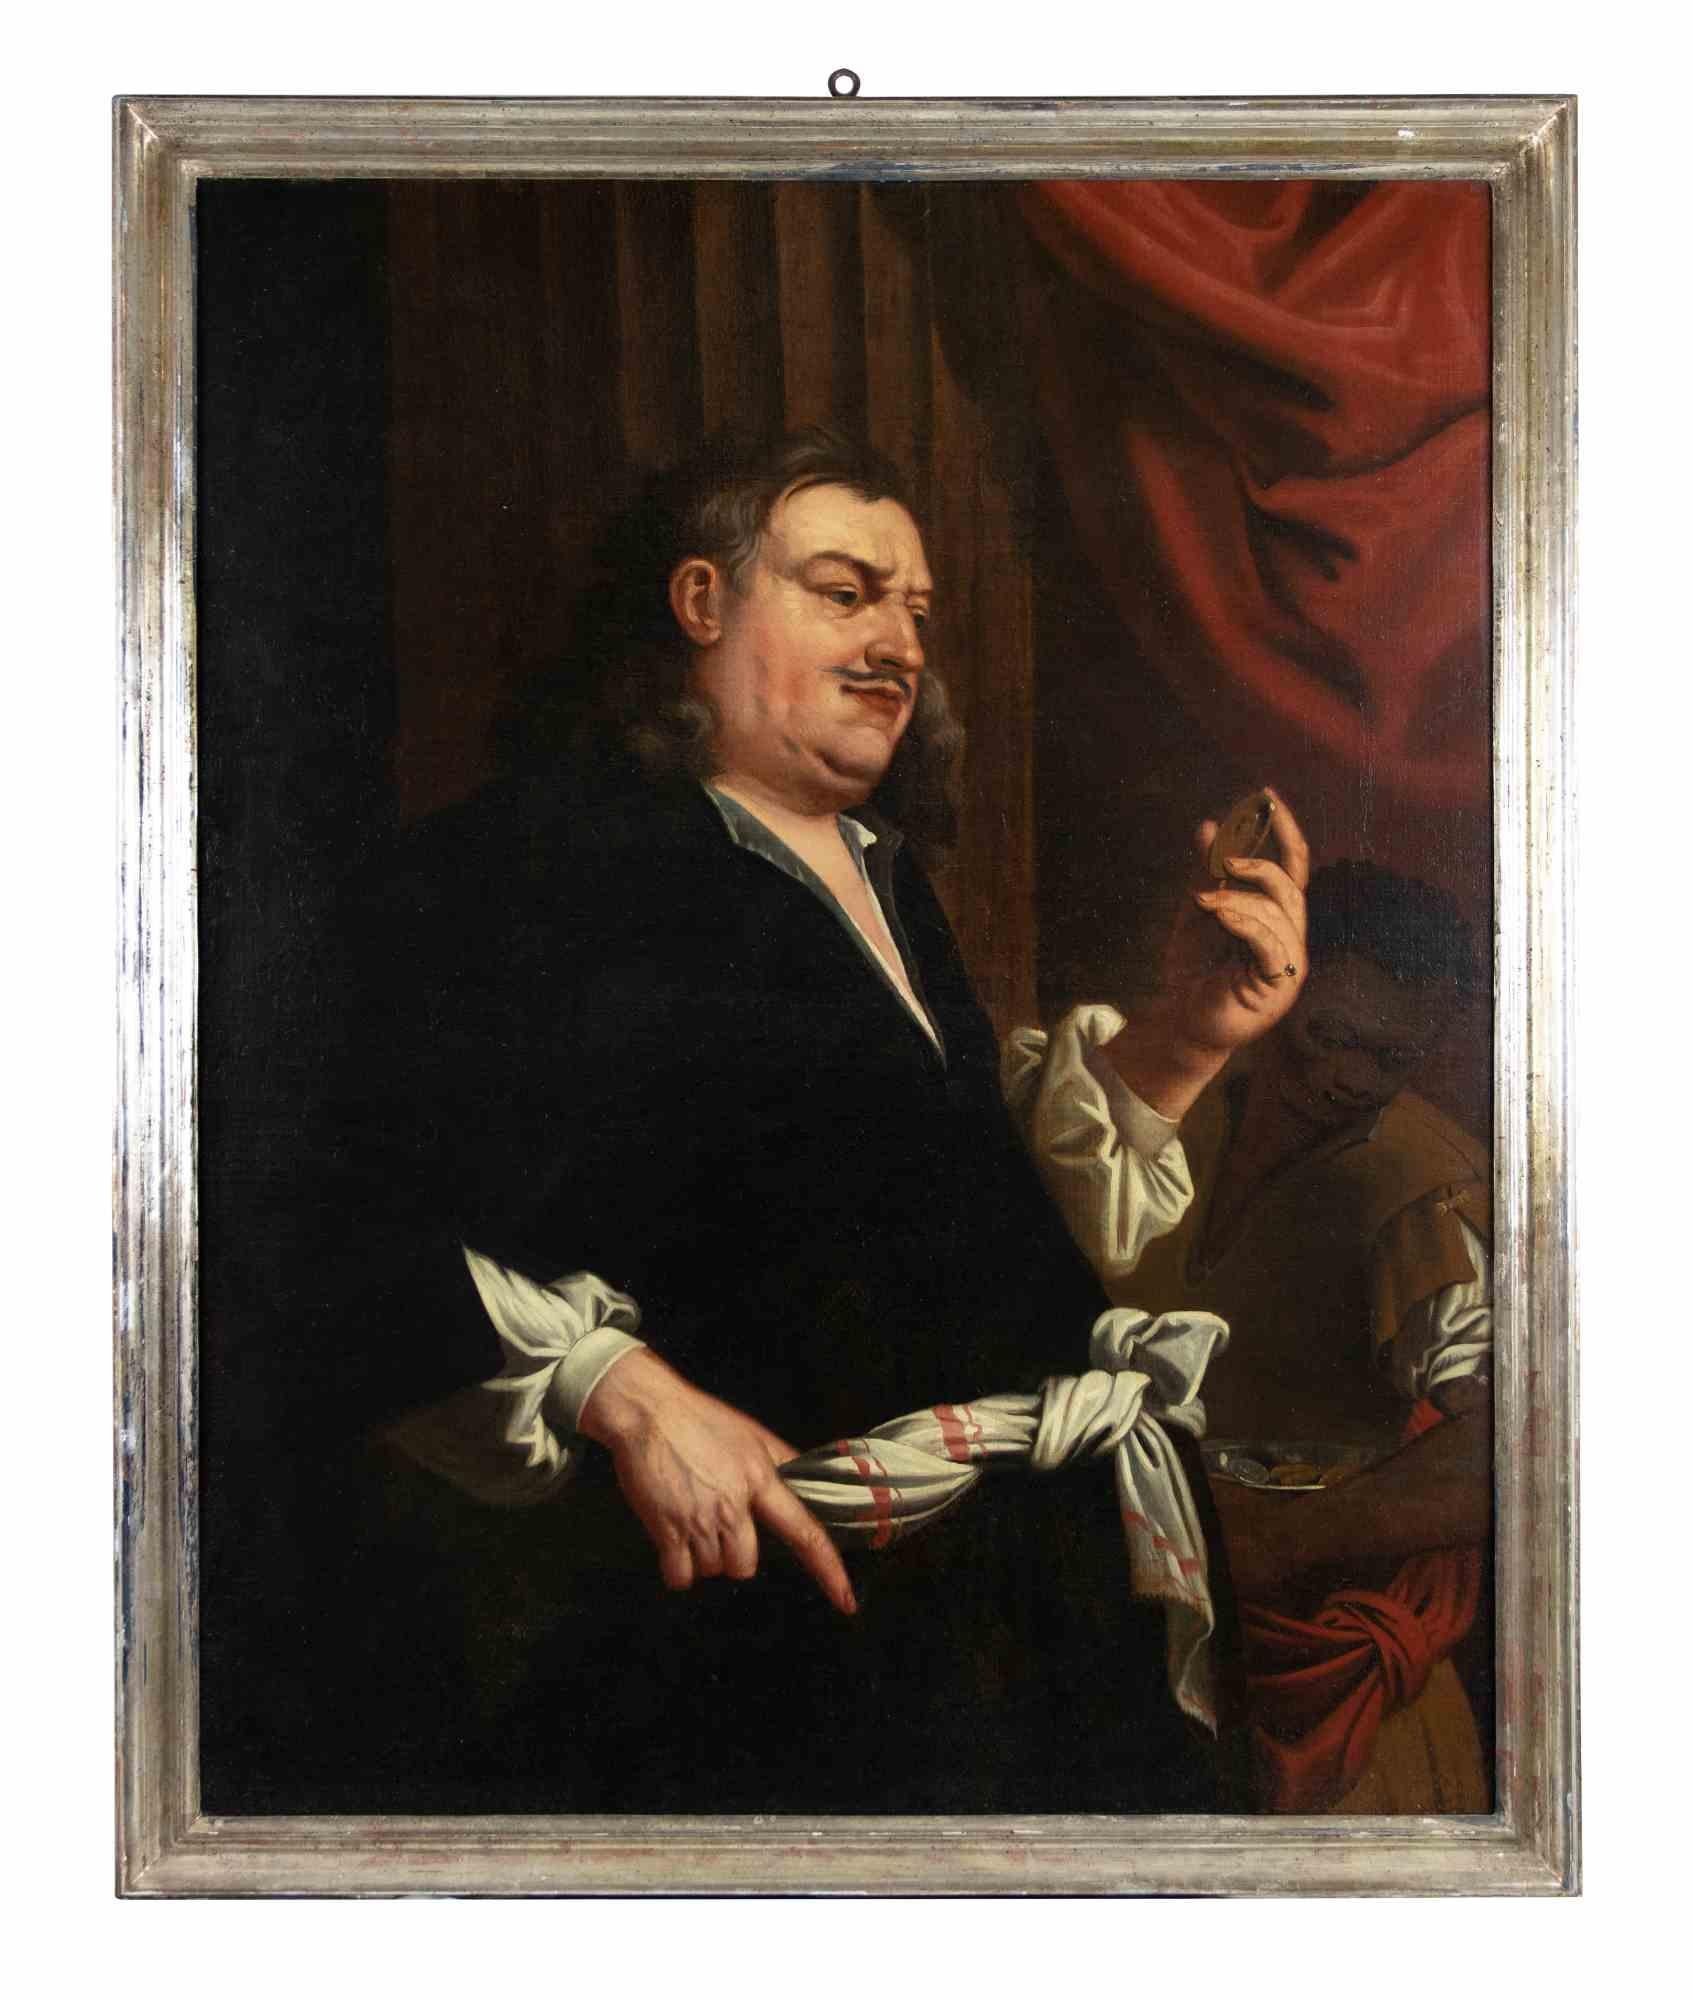 Ein reicher Kaufmann -  Gemälde von Unbekanntem – 18. Jahrhundert